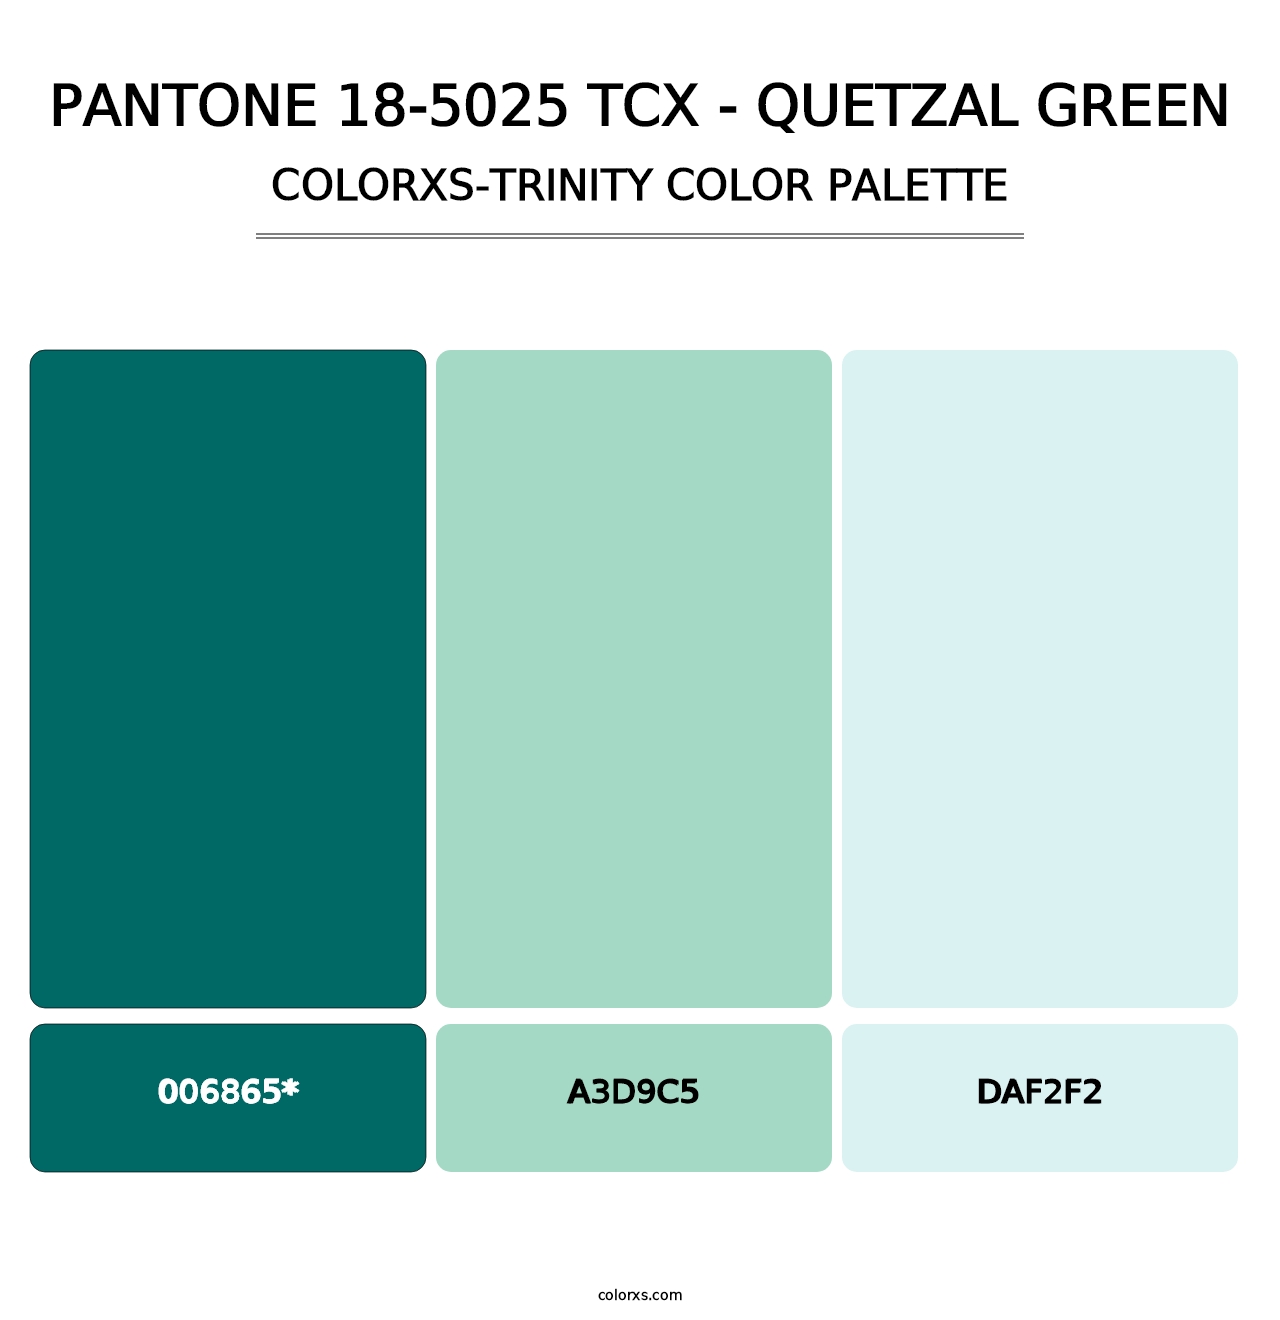 PANTONE 18-5025 TCX - Quetzal Green - Colorxs Trinity Palette